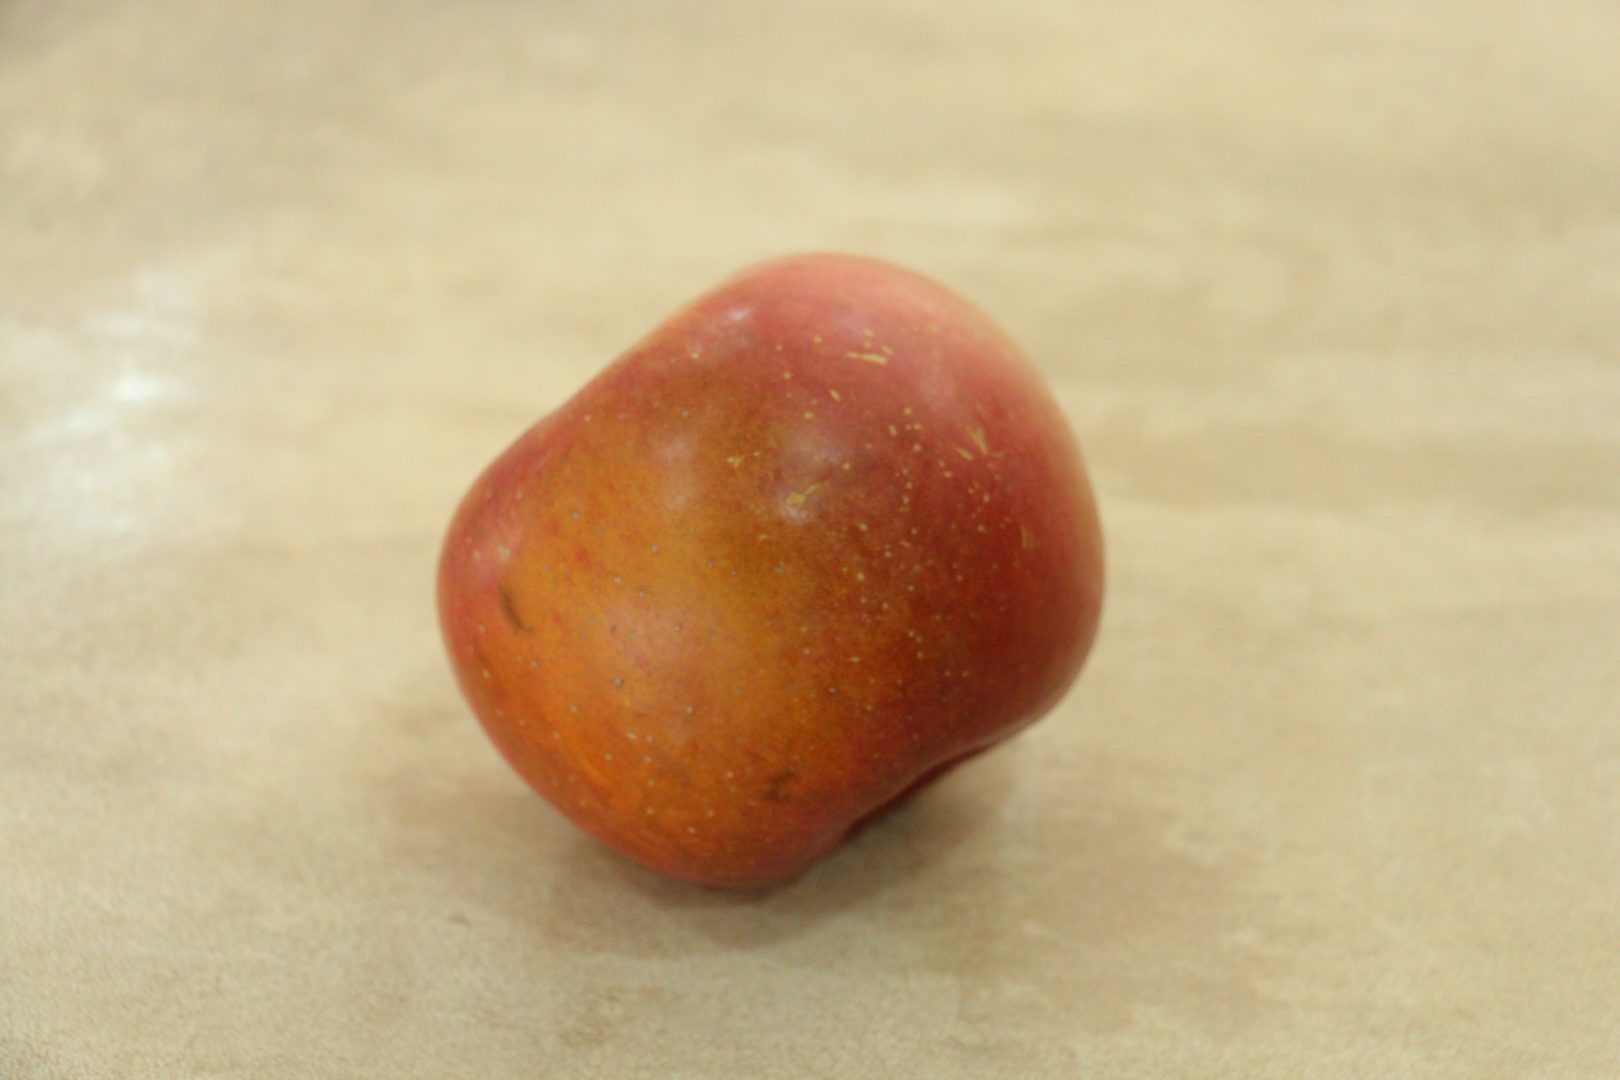 Темное пятно на поверхности яблока - загар, или поверхностный ожог 